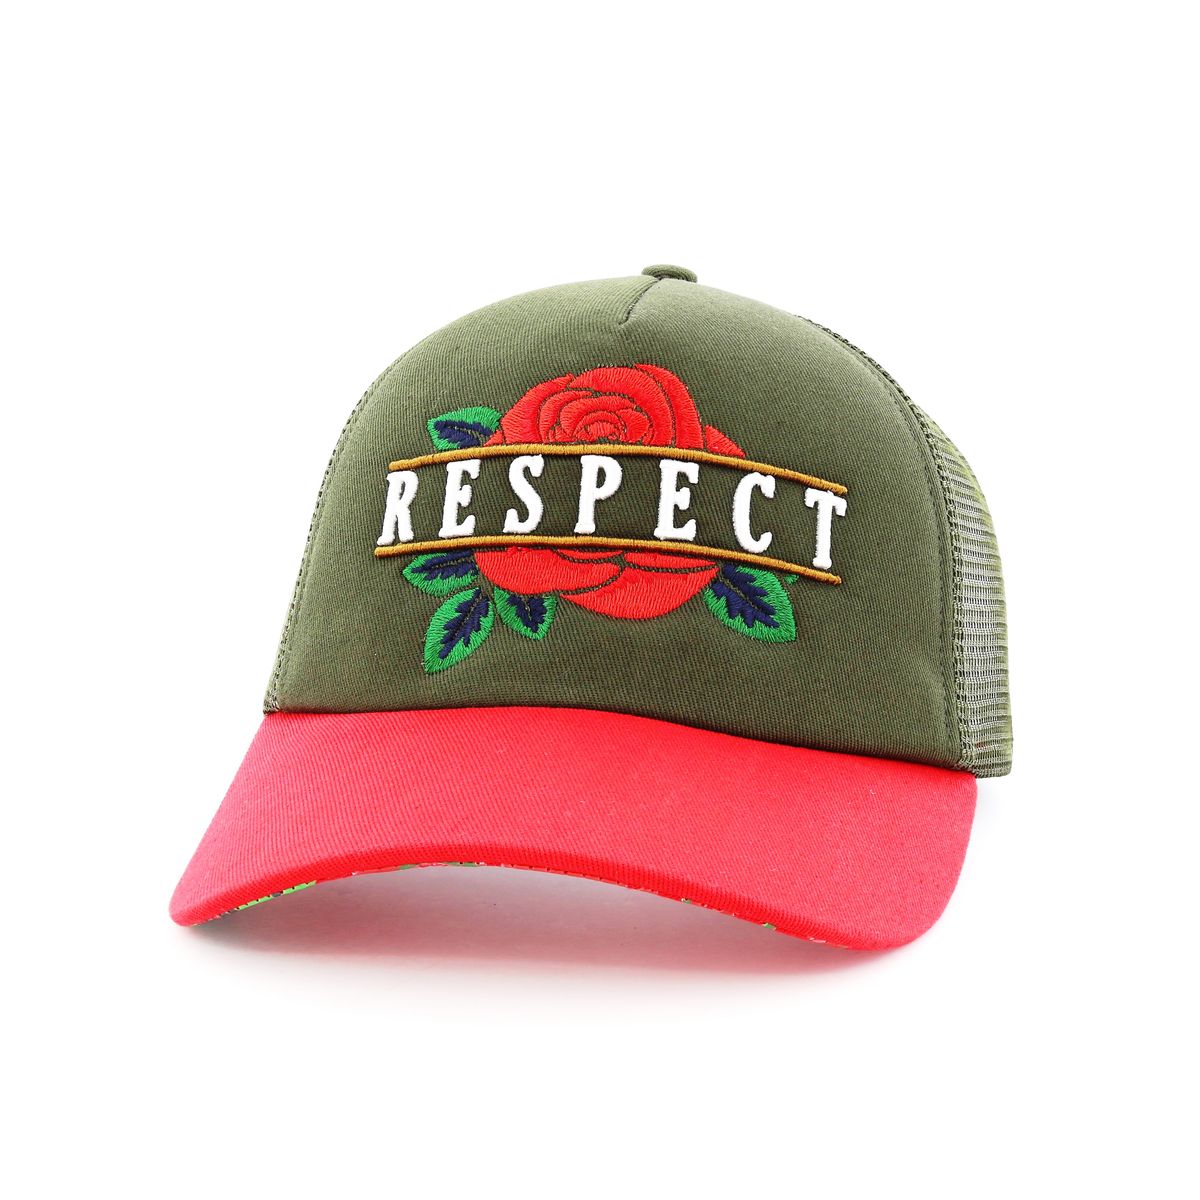 B180 Respect Flower Men's Trucker Cap Red/Green